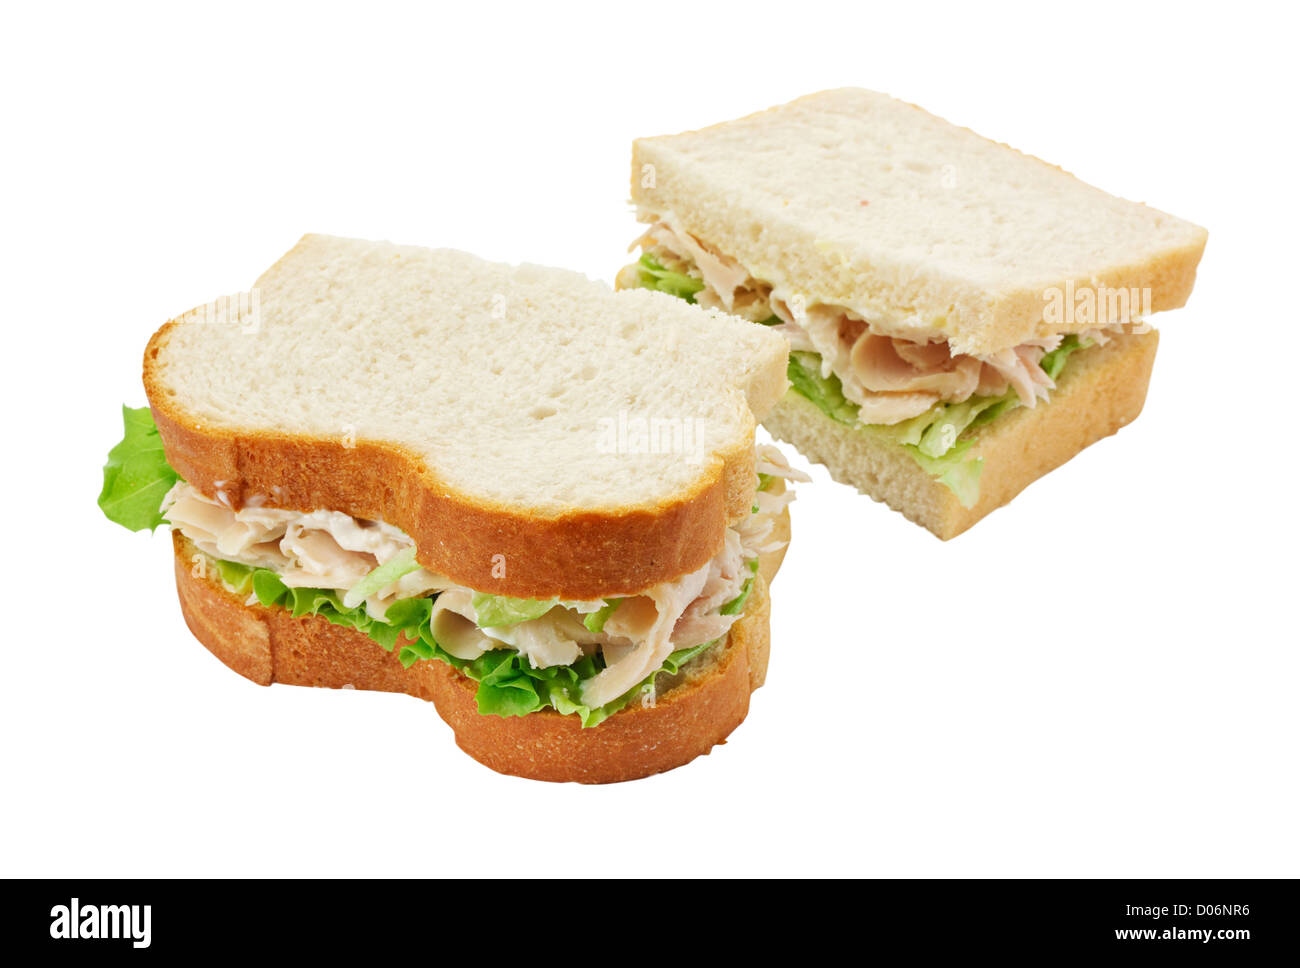 Une salade de jambon sandwich fait avec du pain en tranches coupées en deux avec l'accent sur le remplissage Banque D'Images